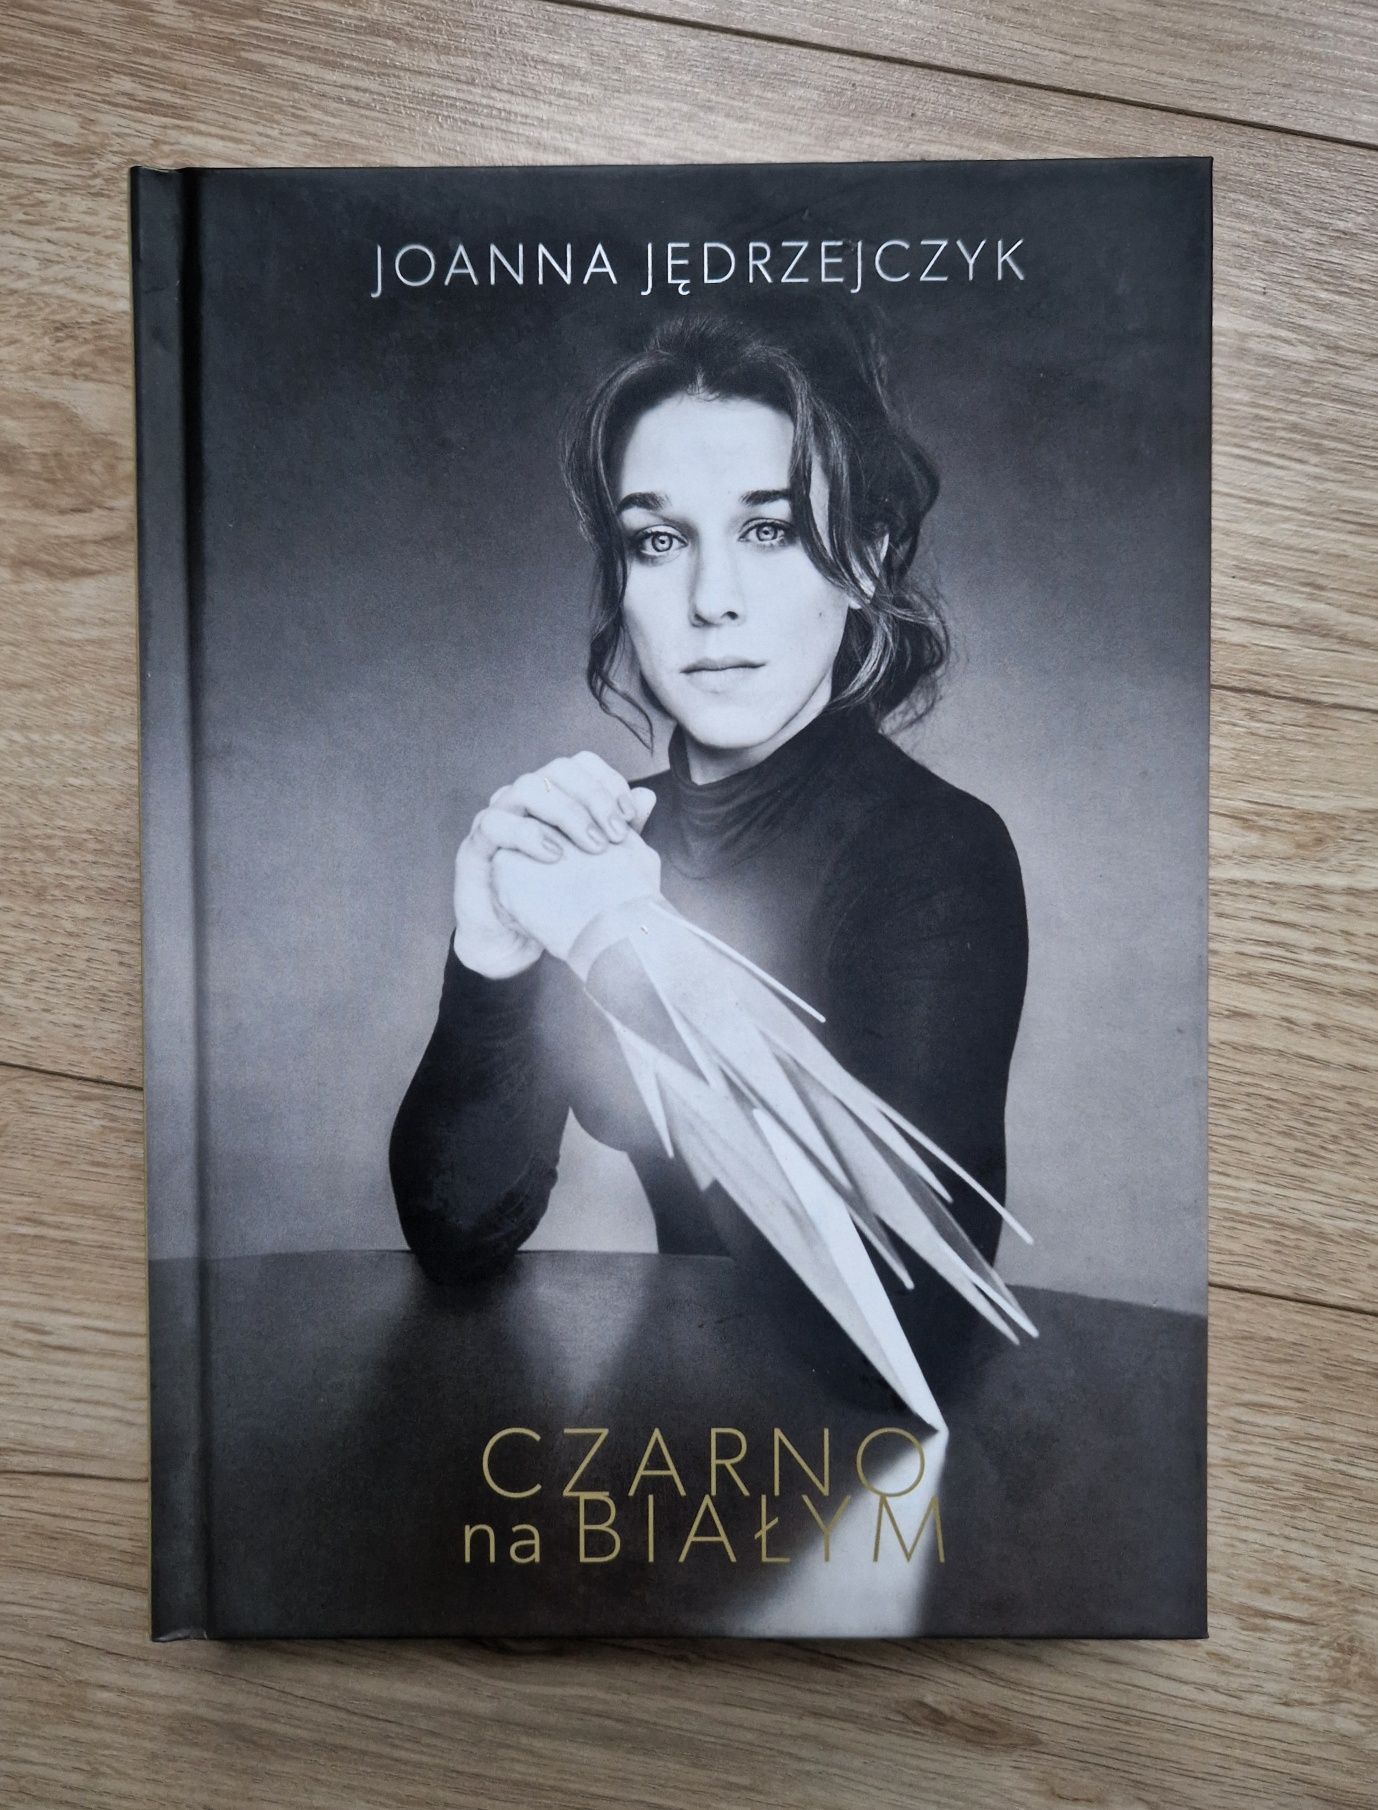 Joanna Jędrzejczyk "Czarno na Białym" biografia jak nowa